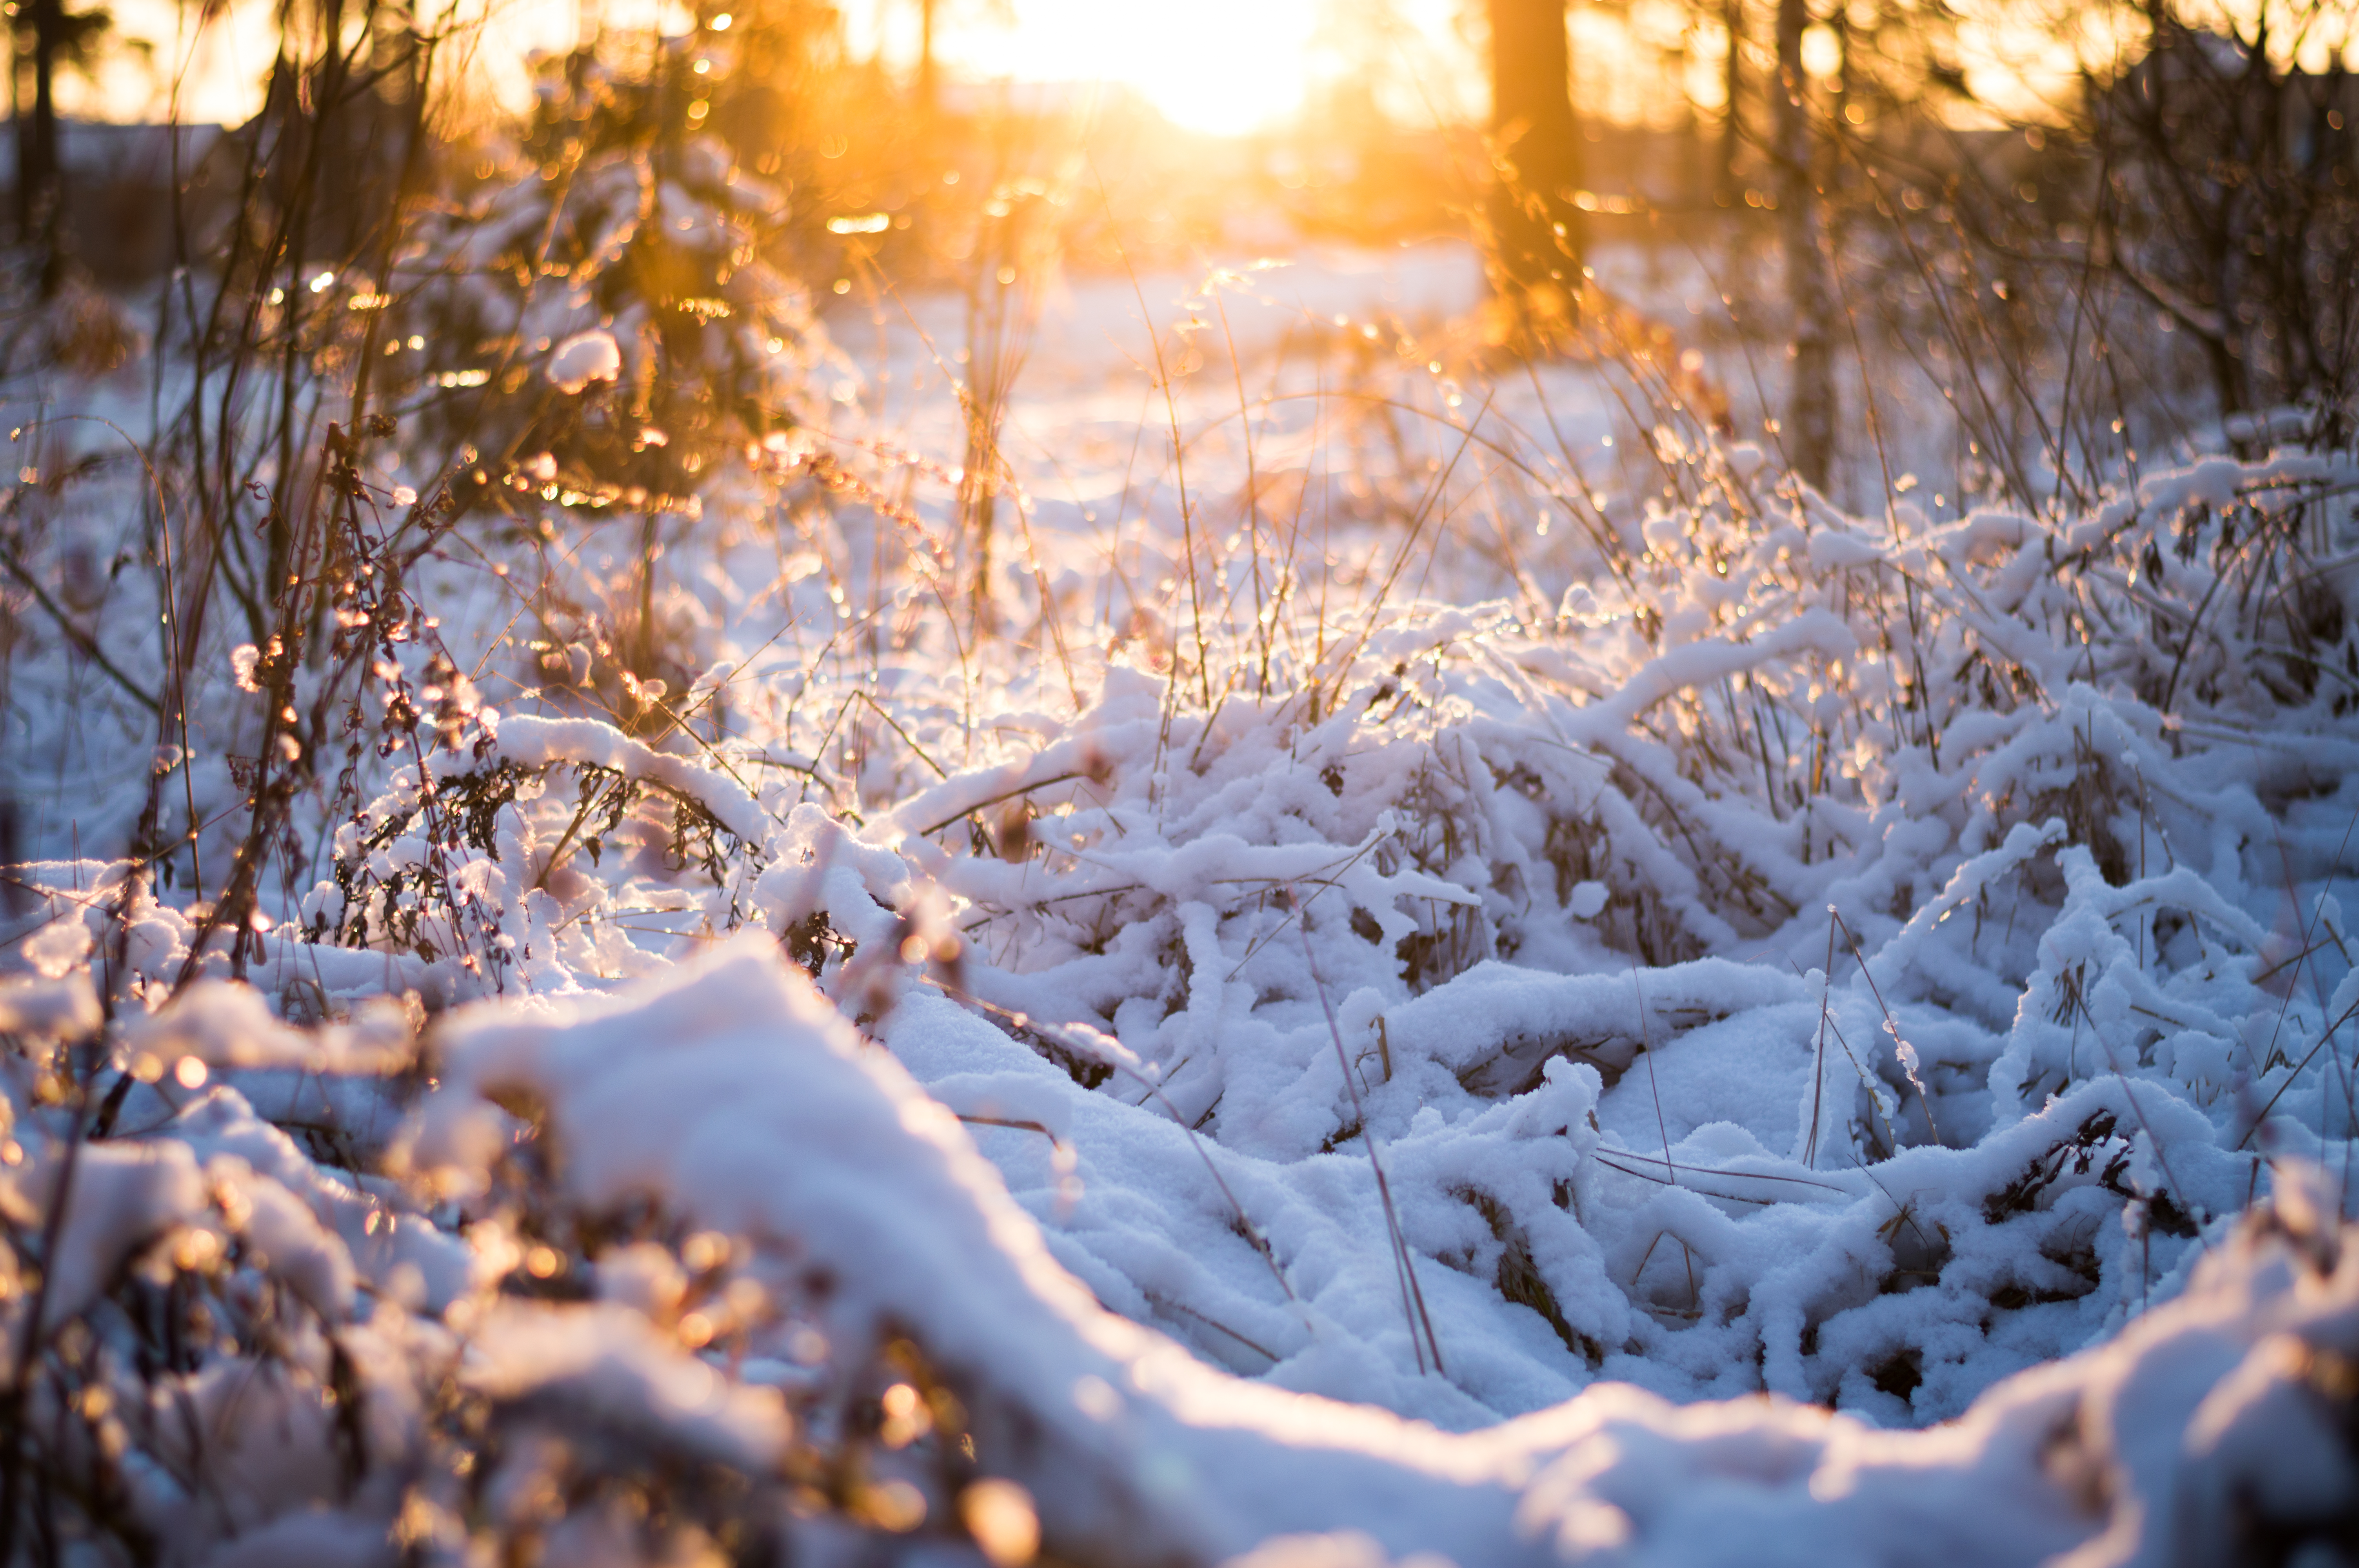 winter sun by spellozz on DeviantArt